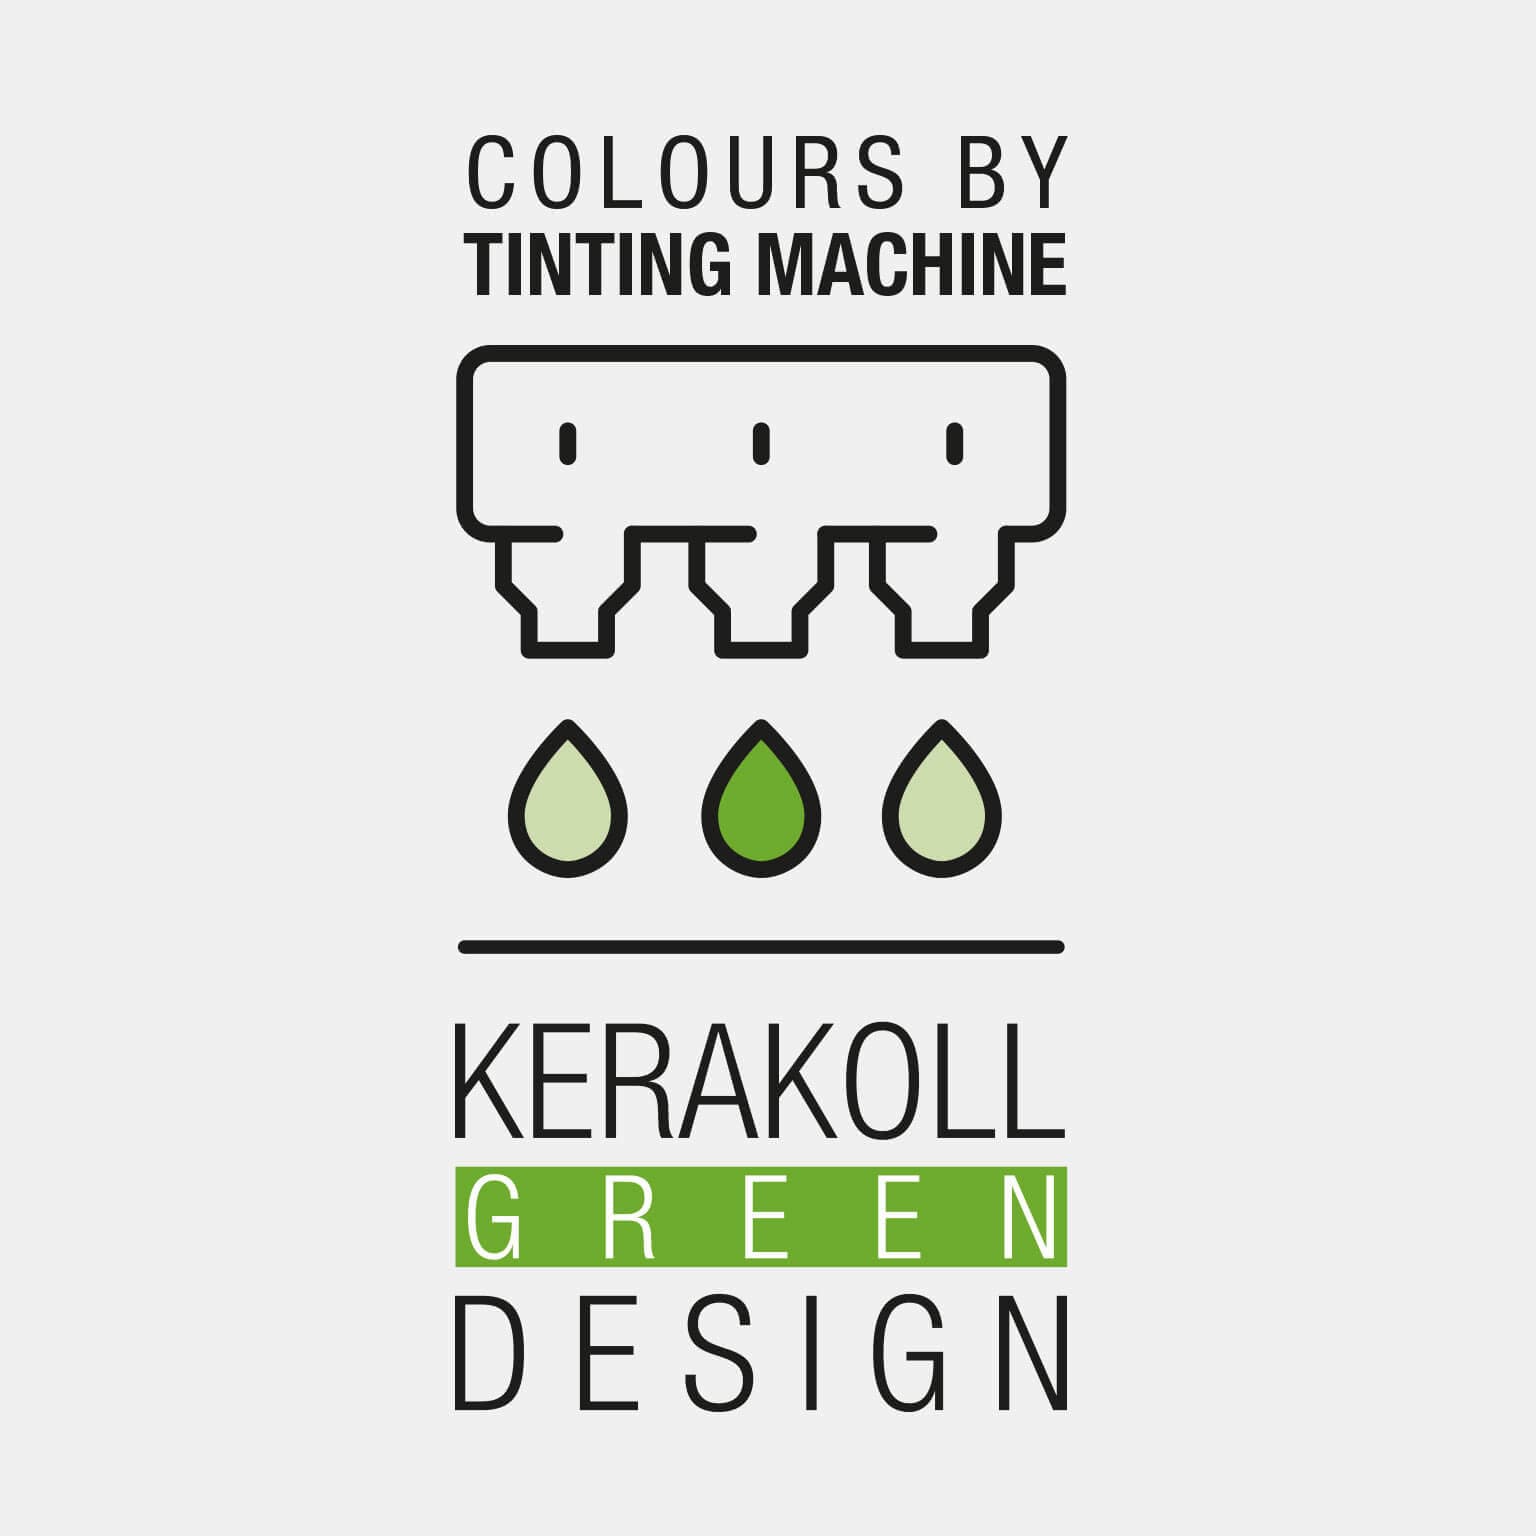 Kerakoll Keradecor Color: szerves ásványi eredetű, bársonyos, vízbázisú, vinil‑műgyanta alapú, légáteresztő matt fedőfesték, ideális a GreenBuildingnél.